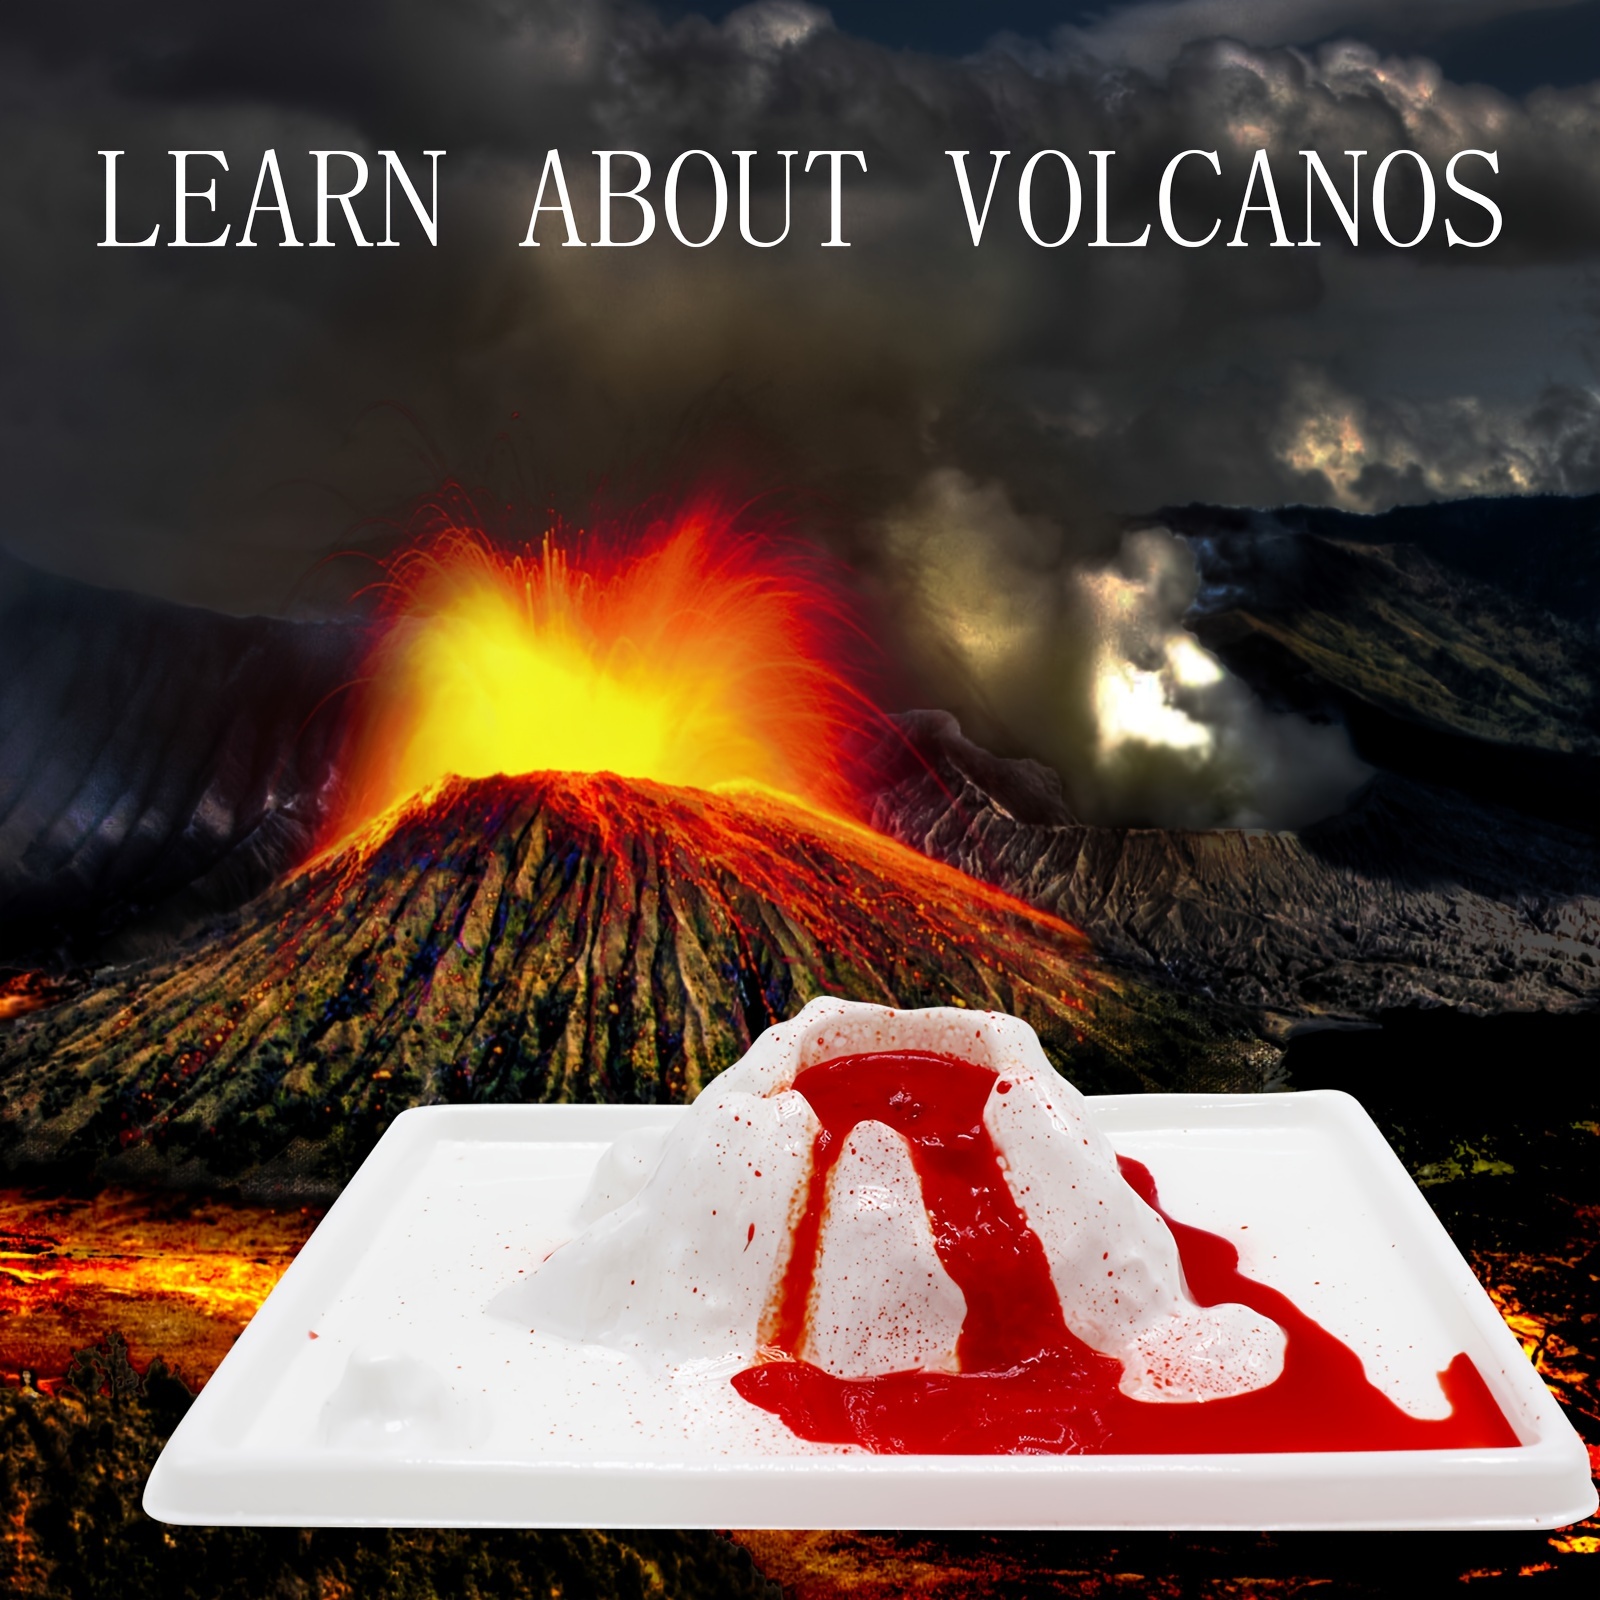 Kit Science et jeu : La science volcanique